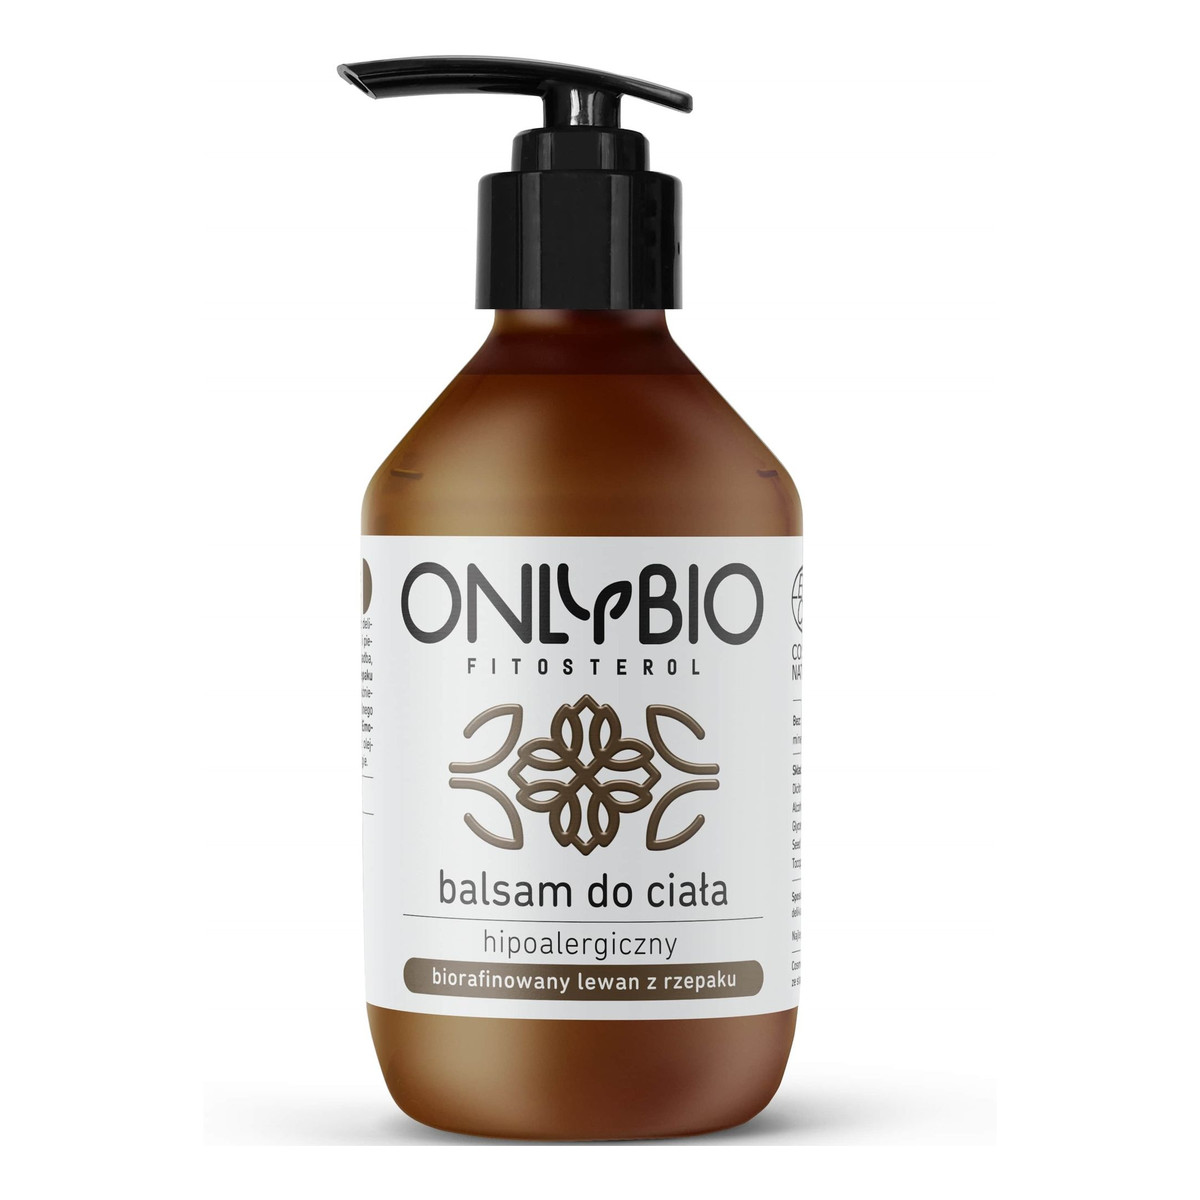 OnlyBio Fitosterol hipoalergiczny balsam do ciała z olejem z rzepaku 250ml